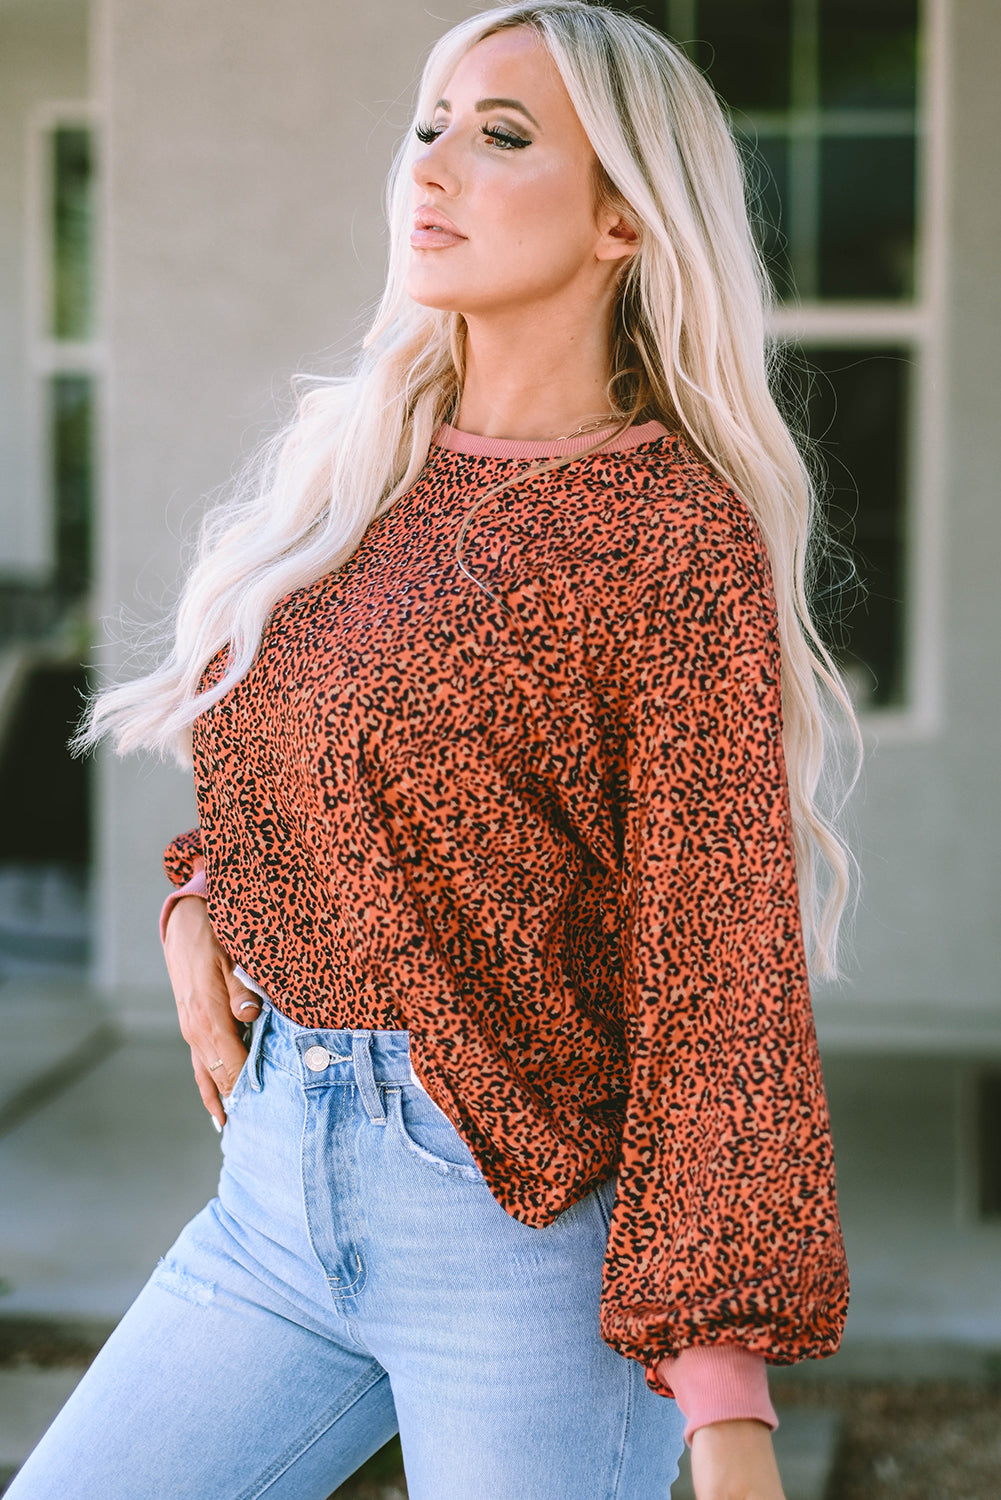 Vintage pulover majica s mjehurićima u obliku leoparda